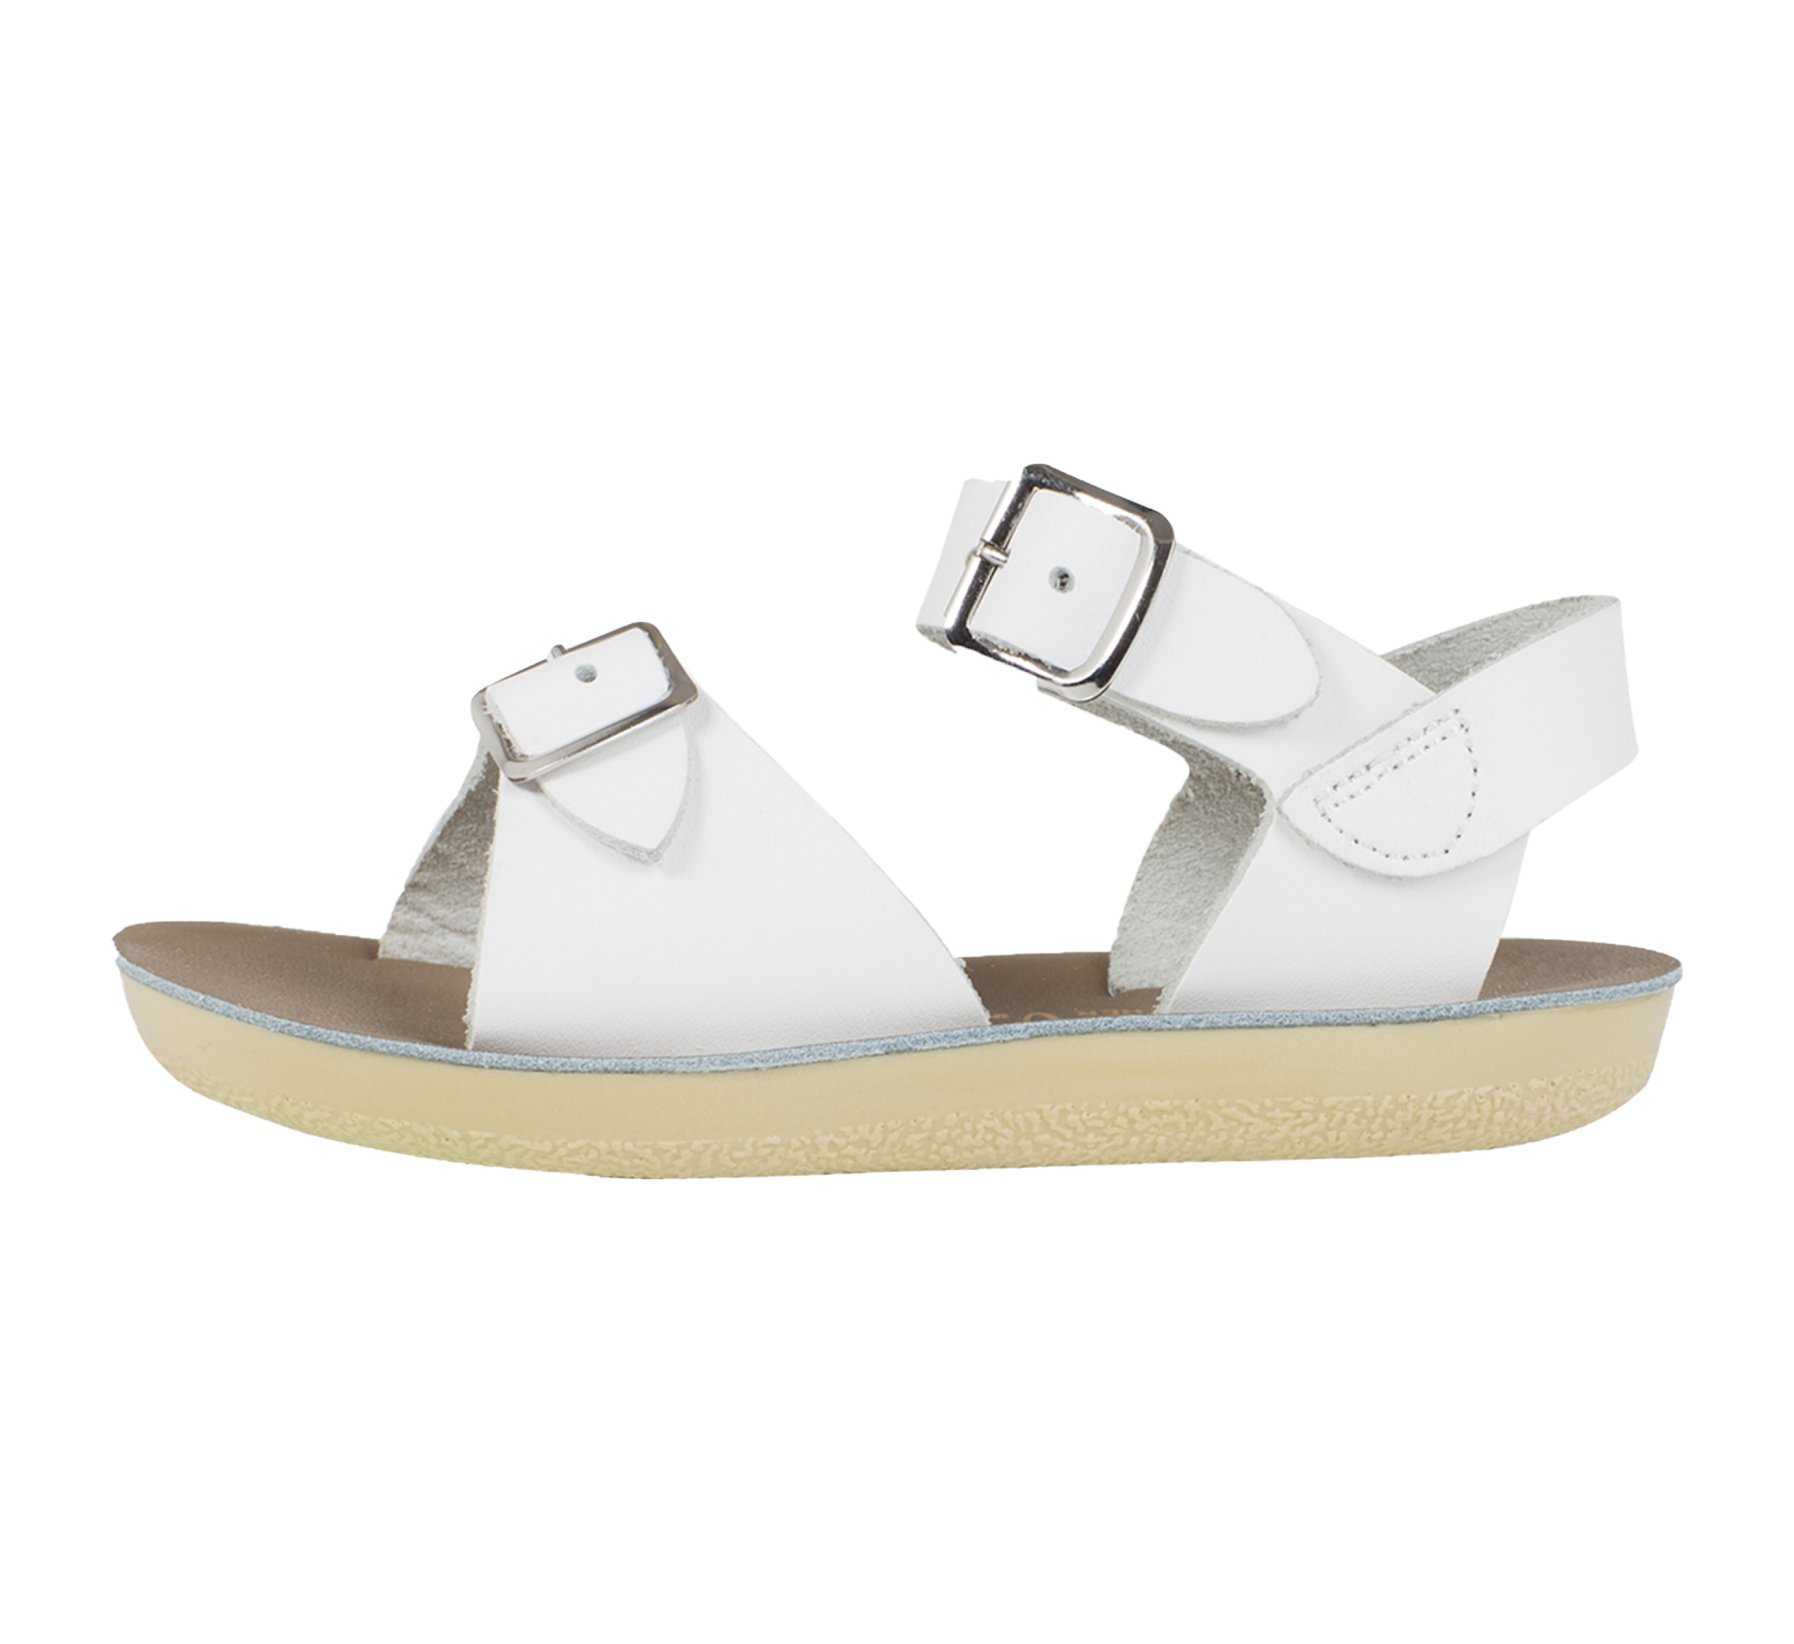 Surfer Blanc - Salt Water Sandals